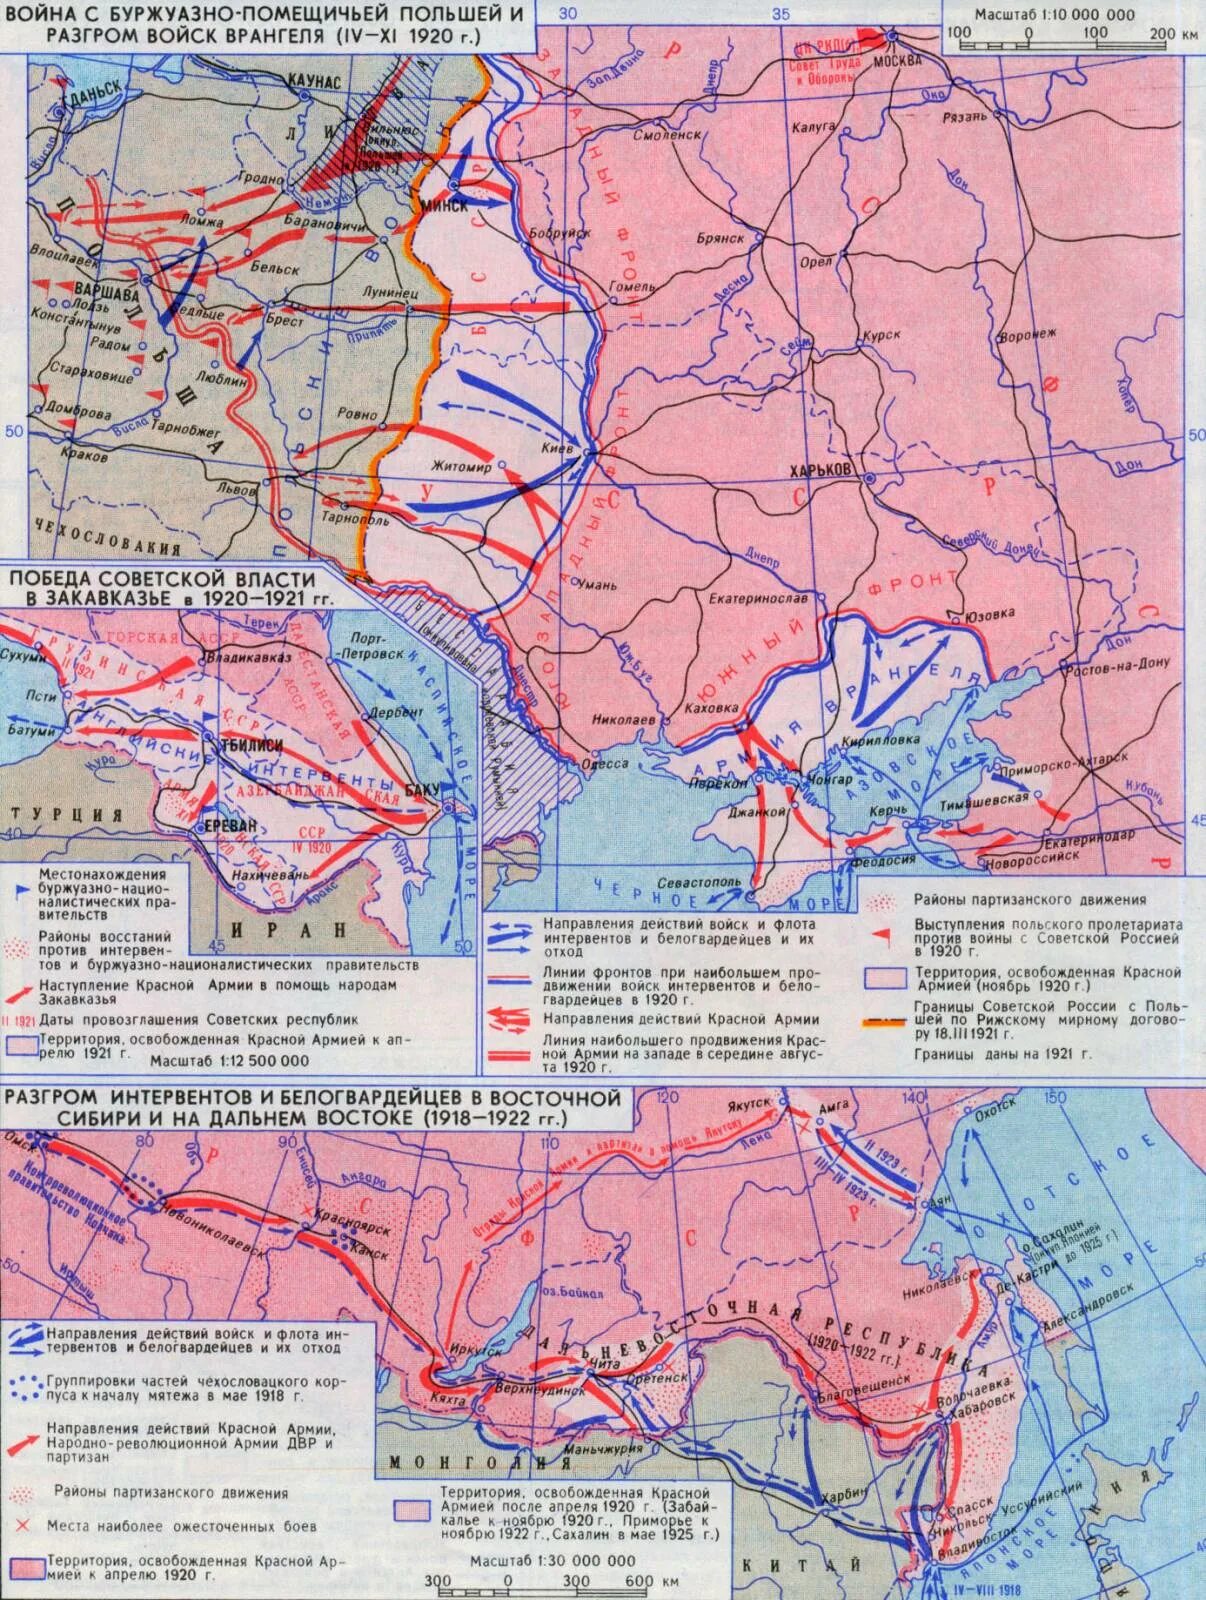 Движение на москву гражданской войны. Карта гражданской войны в России 1917-1922.